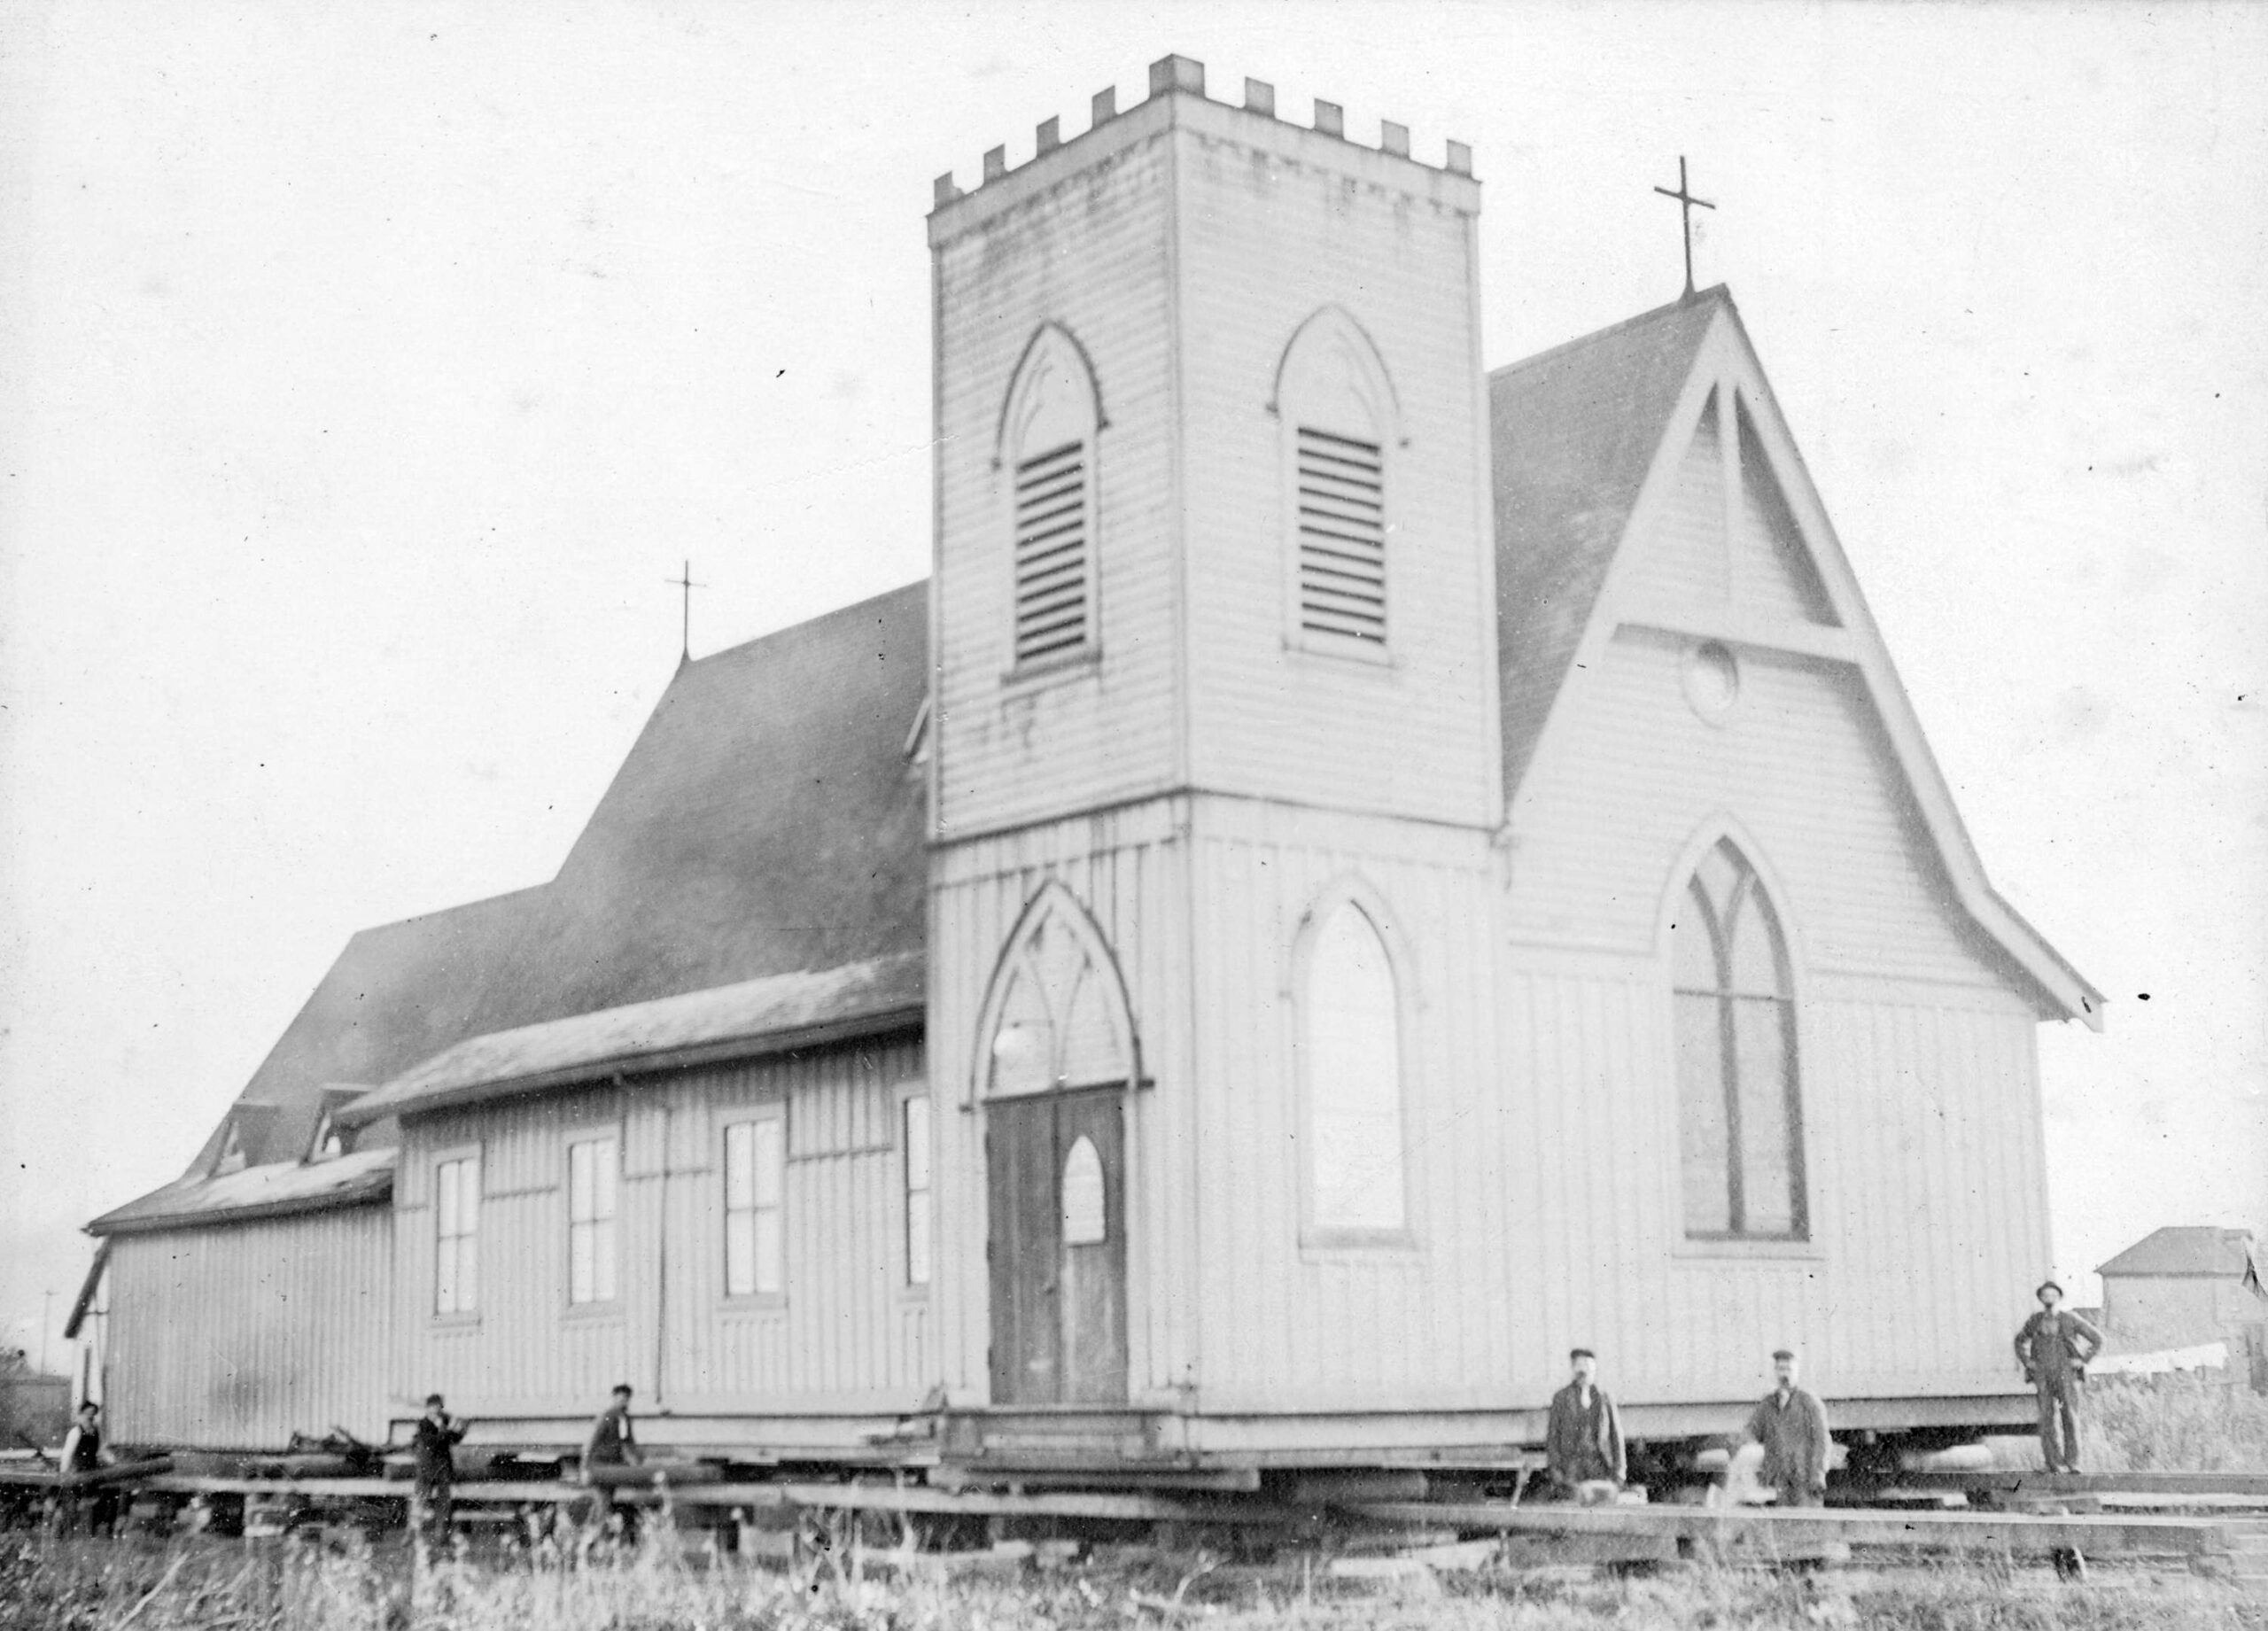 St. Paul’s Church On The Move – November 28, 1898